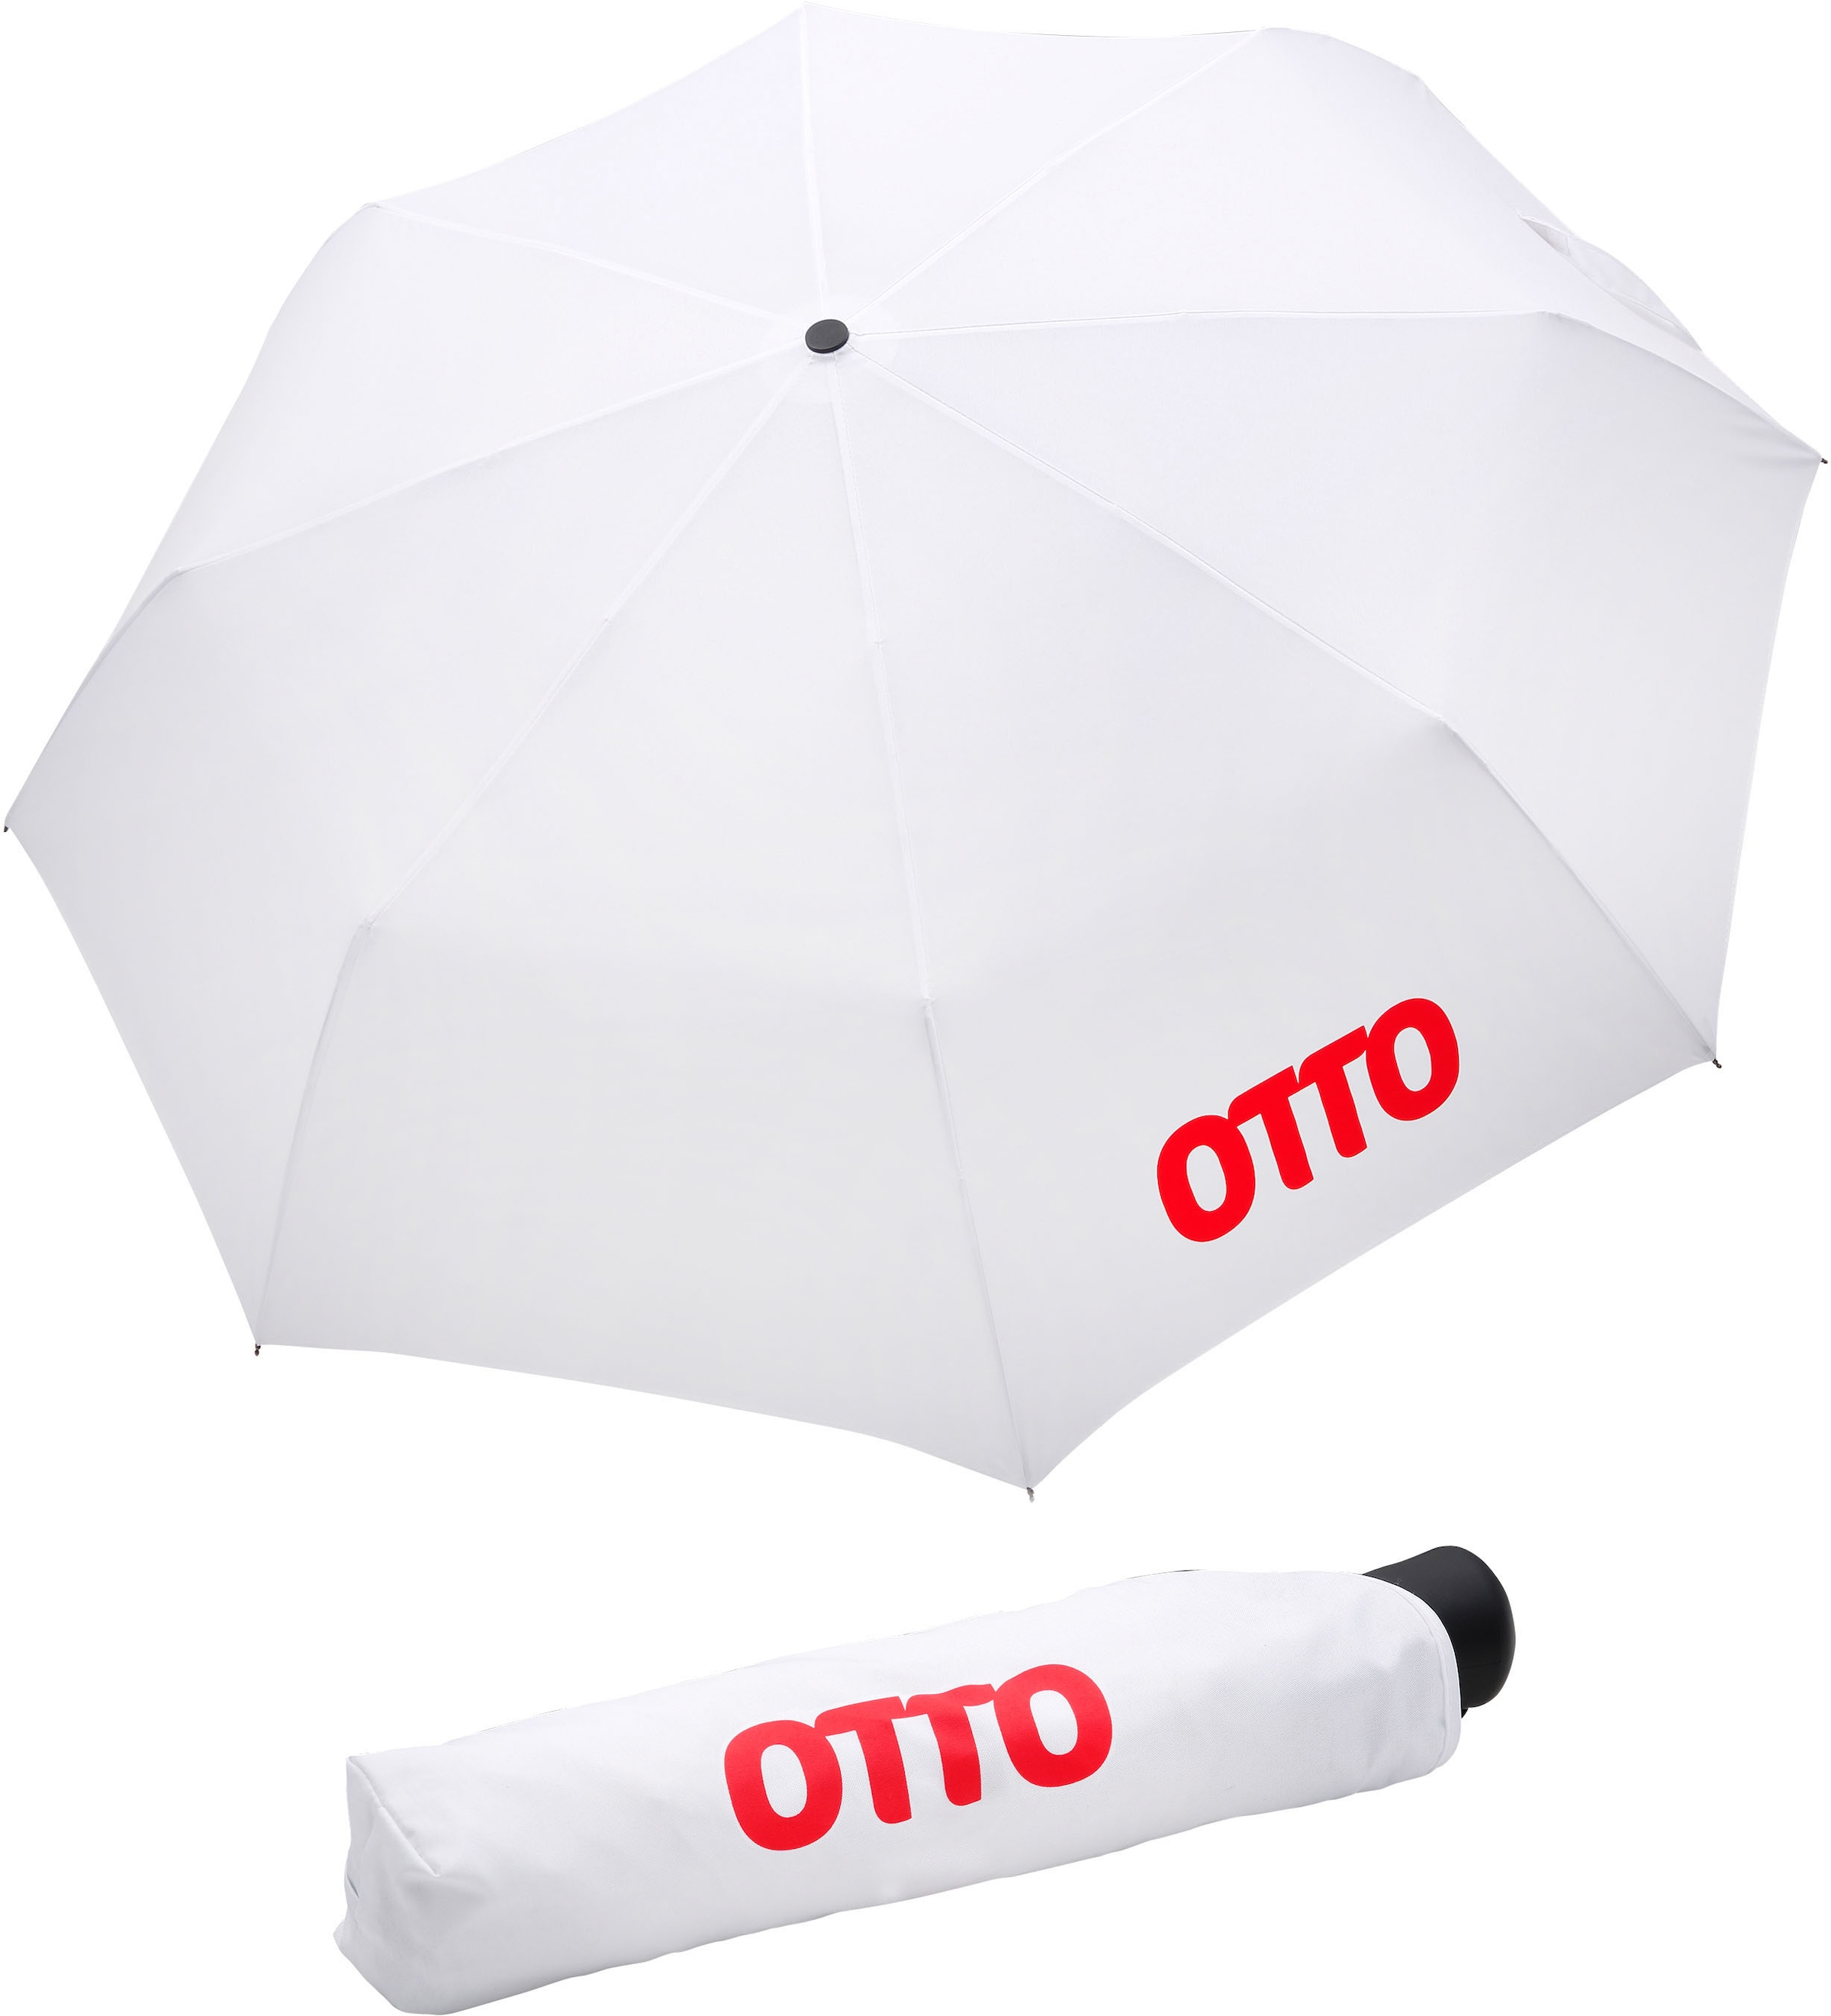 Taschenregenschirm »Otto, weiß«, mit rotem Schriftzug; Automatik